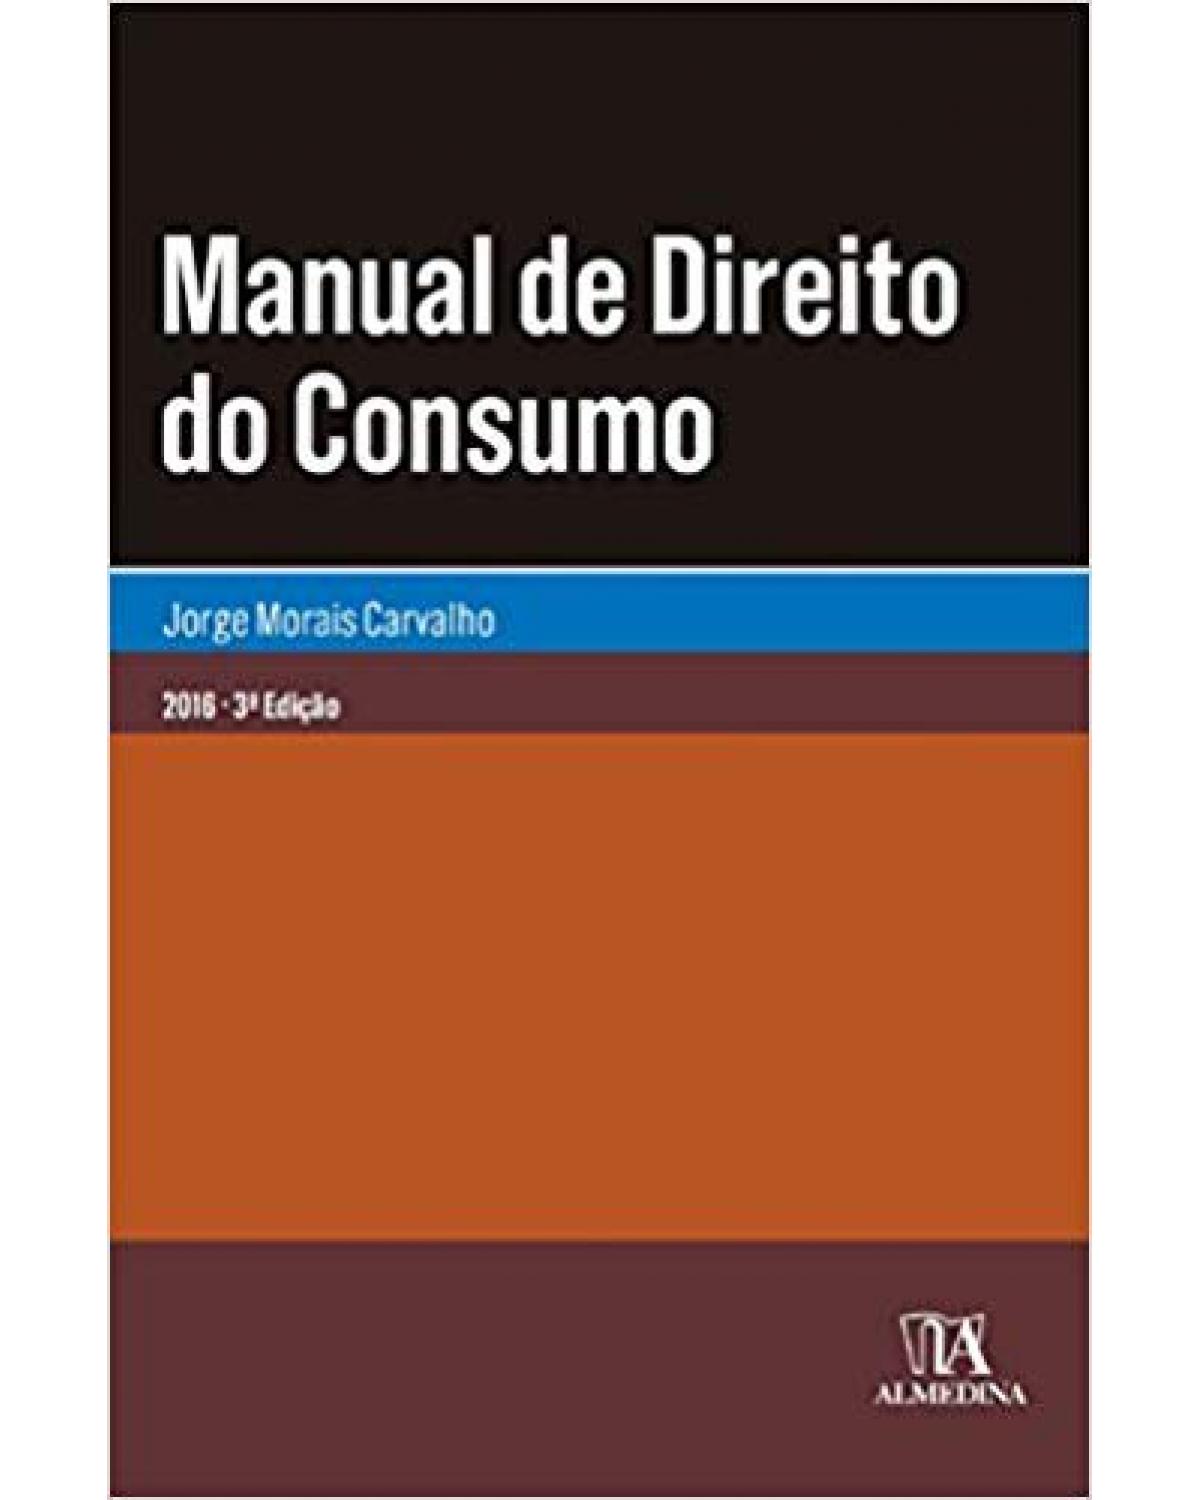 Manual de direito do consumo - 3ª Edição | 2016